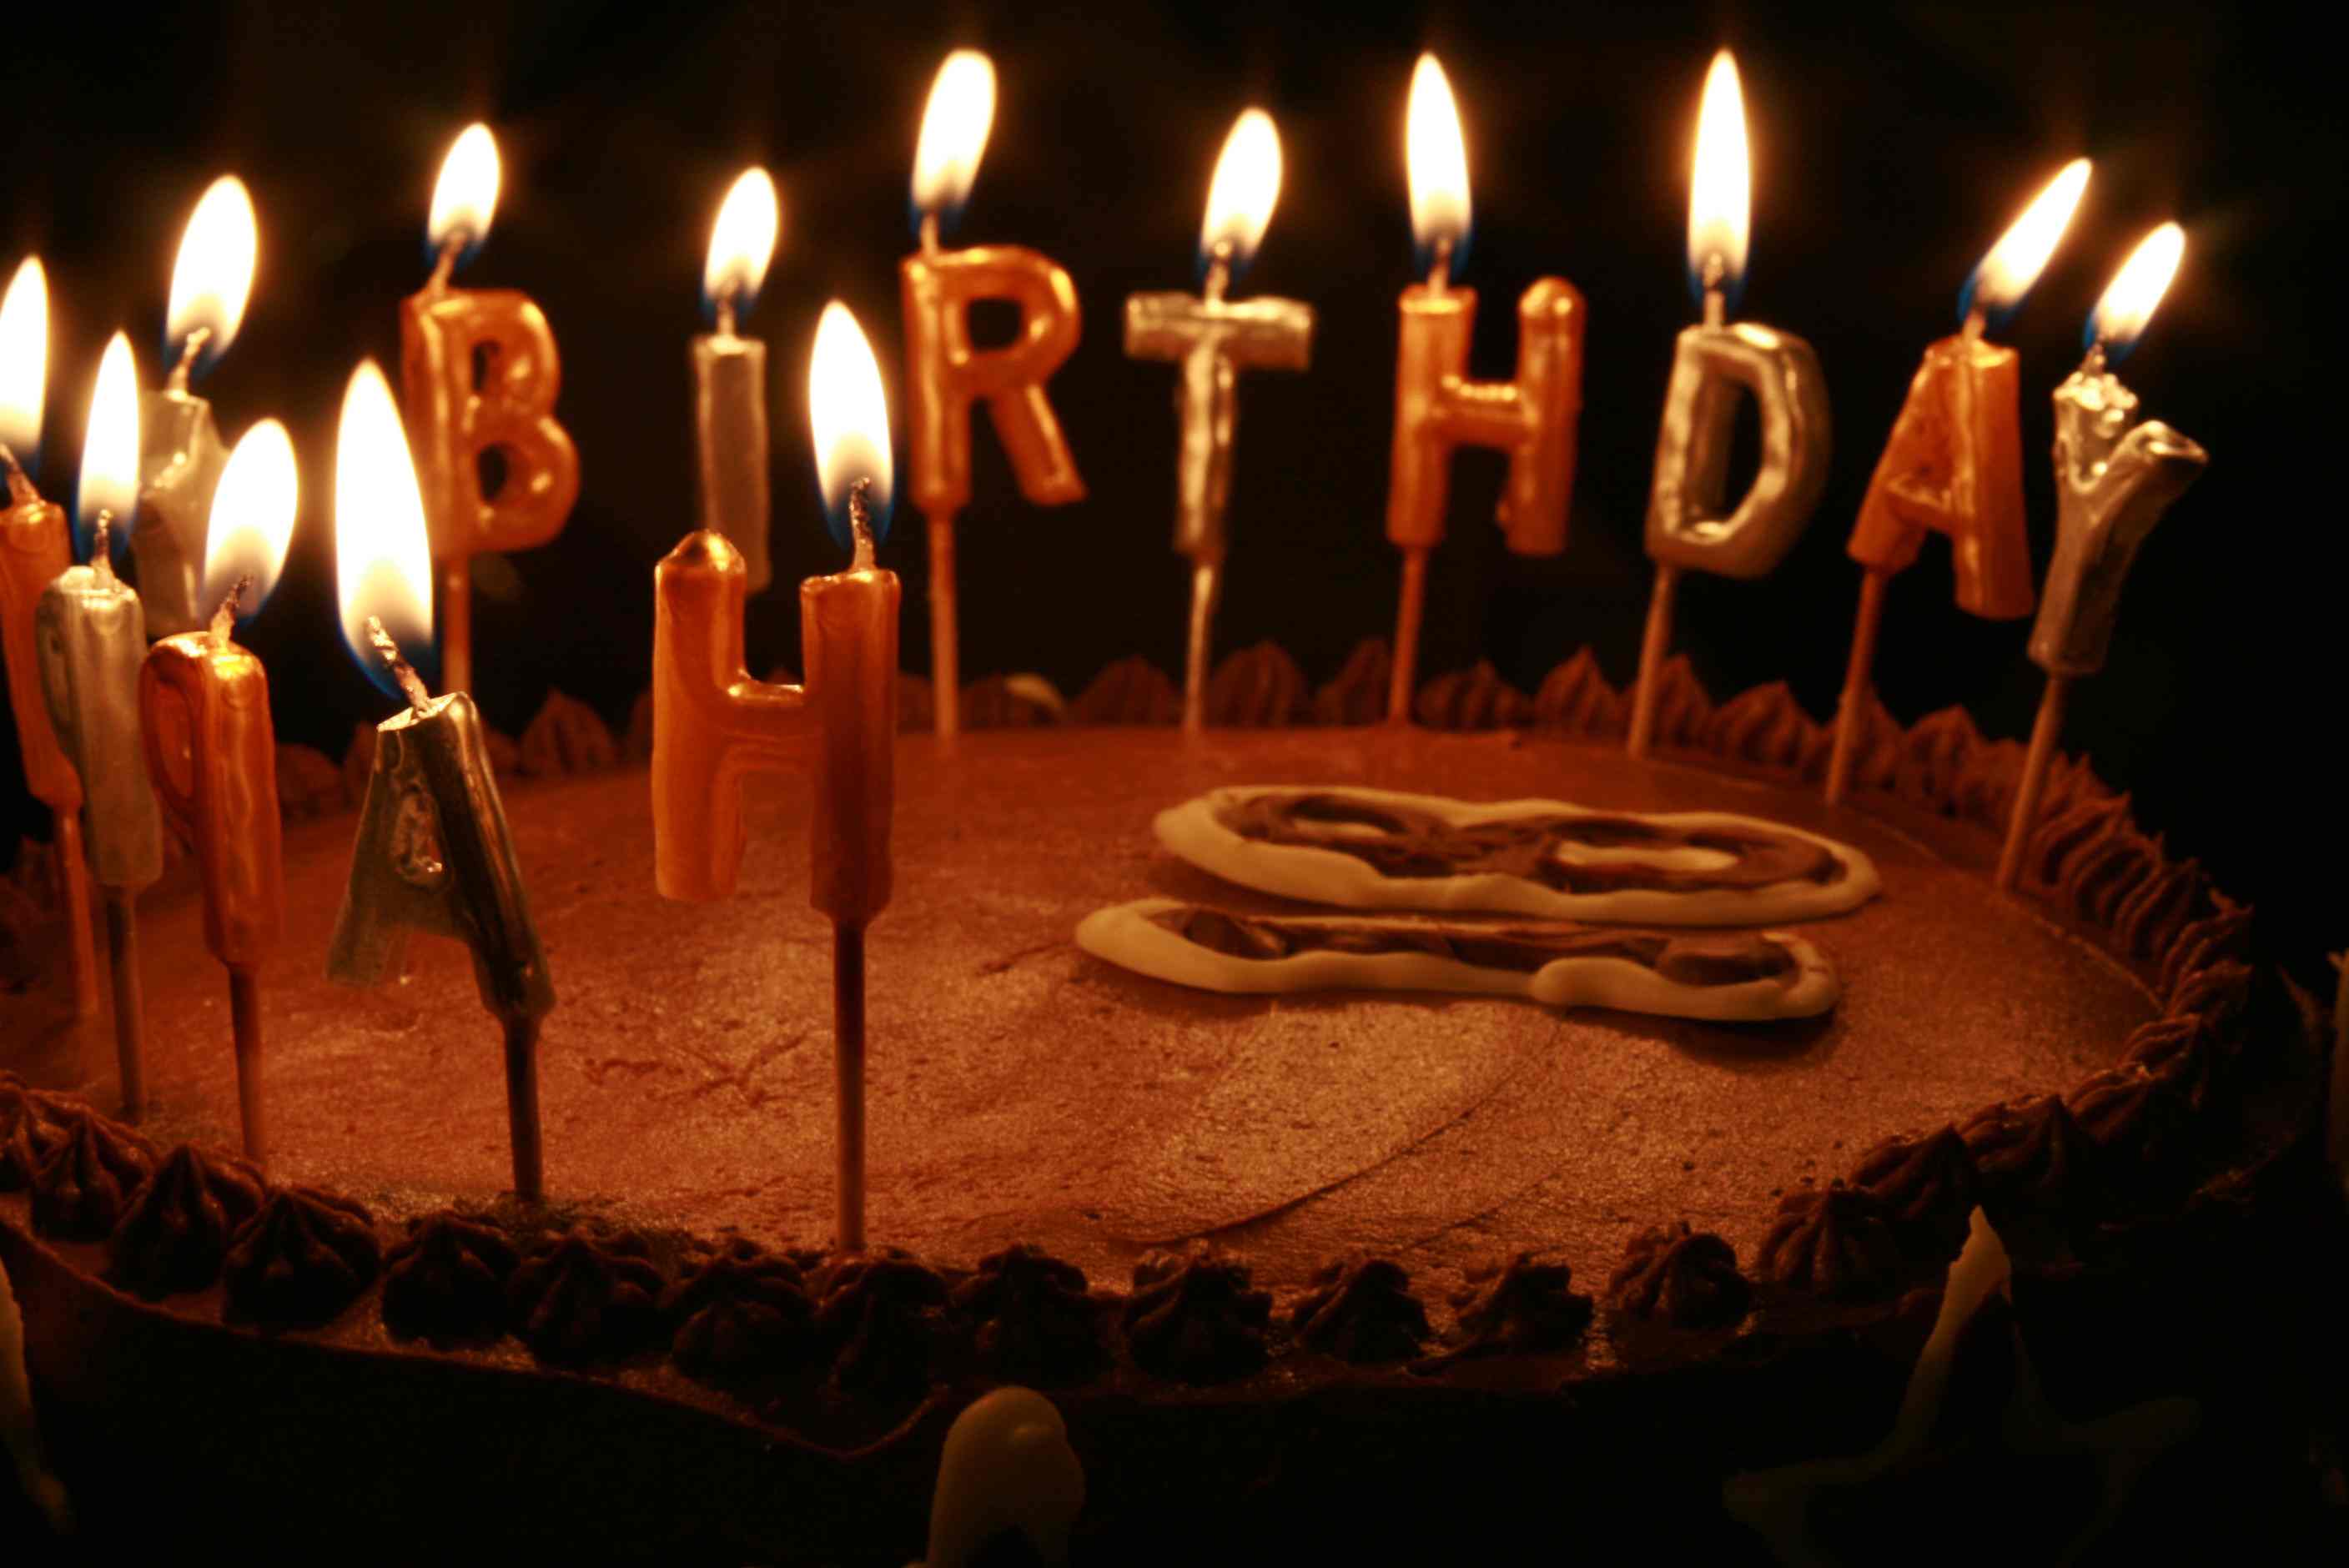 Chocolate-birthday-cake.jpg